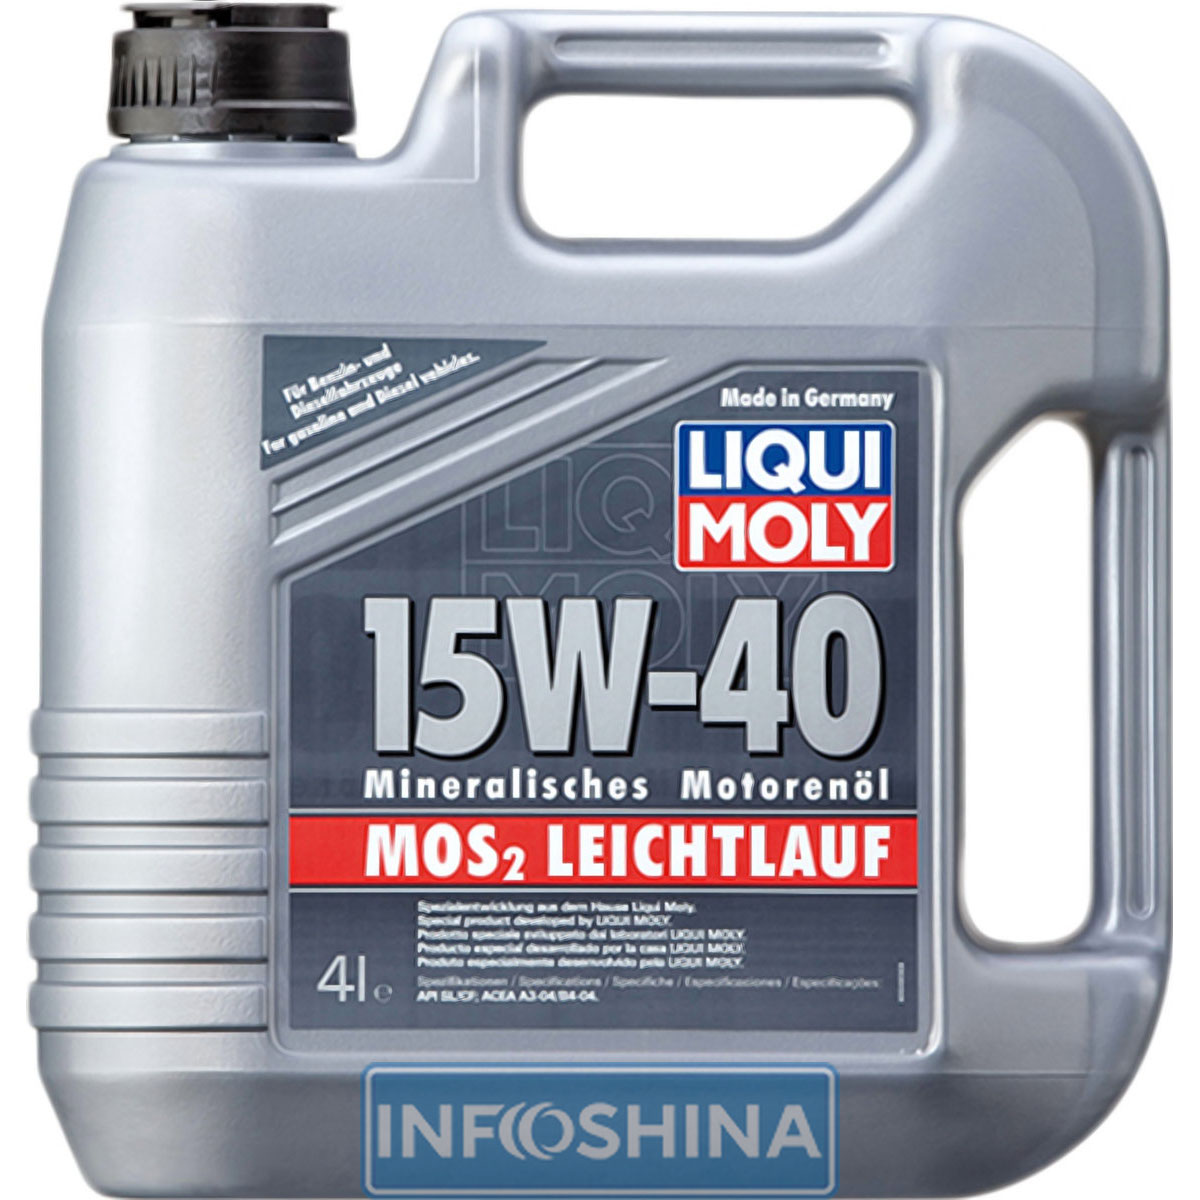 Liqui Moly MoS2 Leichtlauf 15W-40